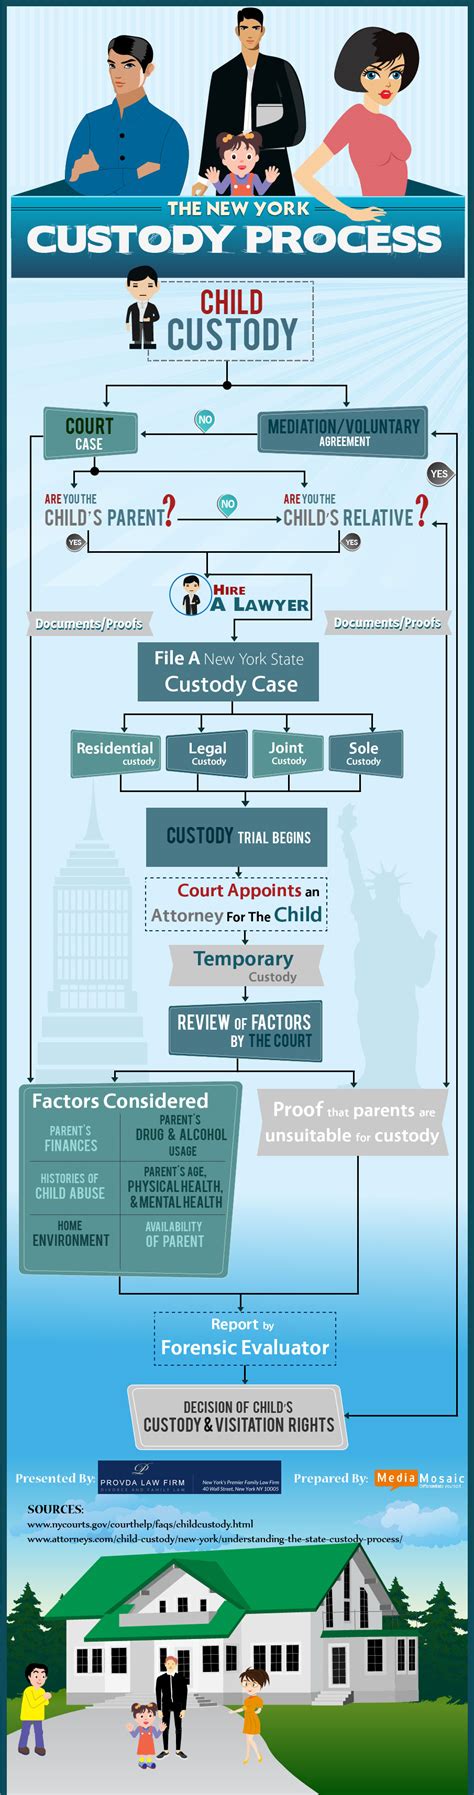 Child Custody Process